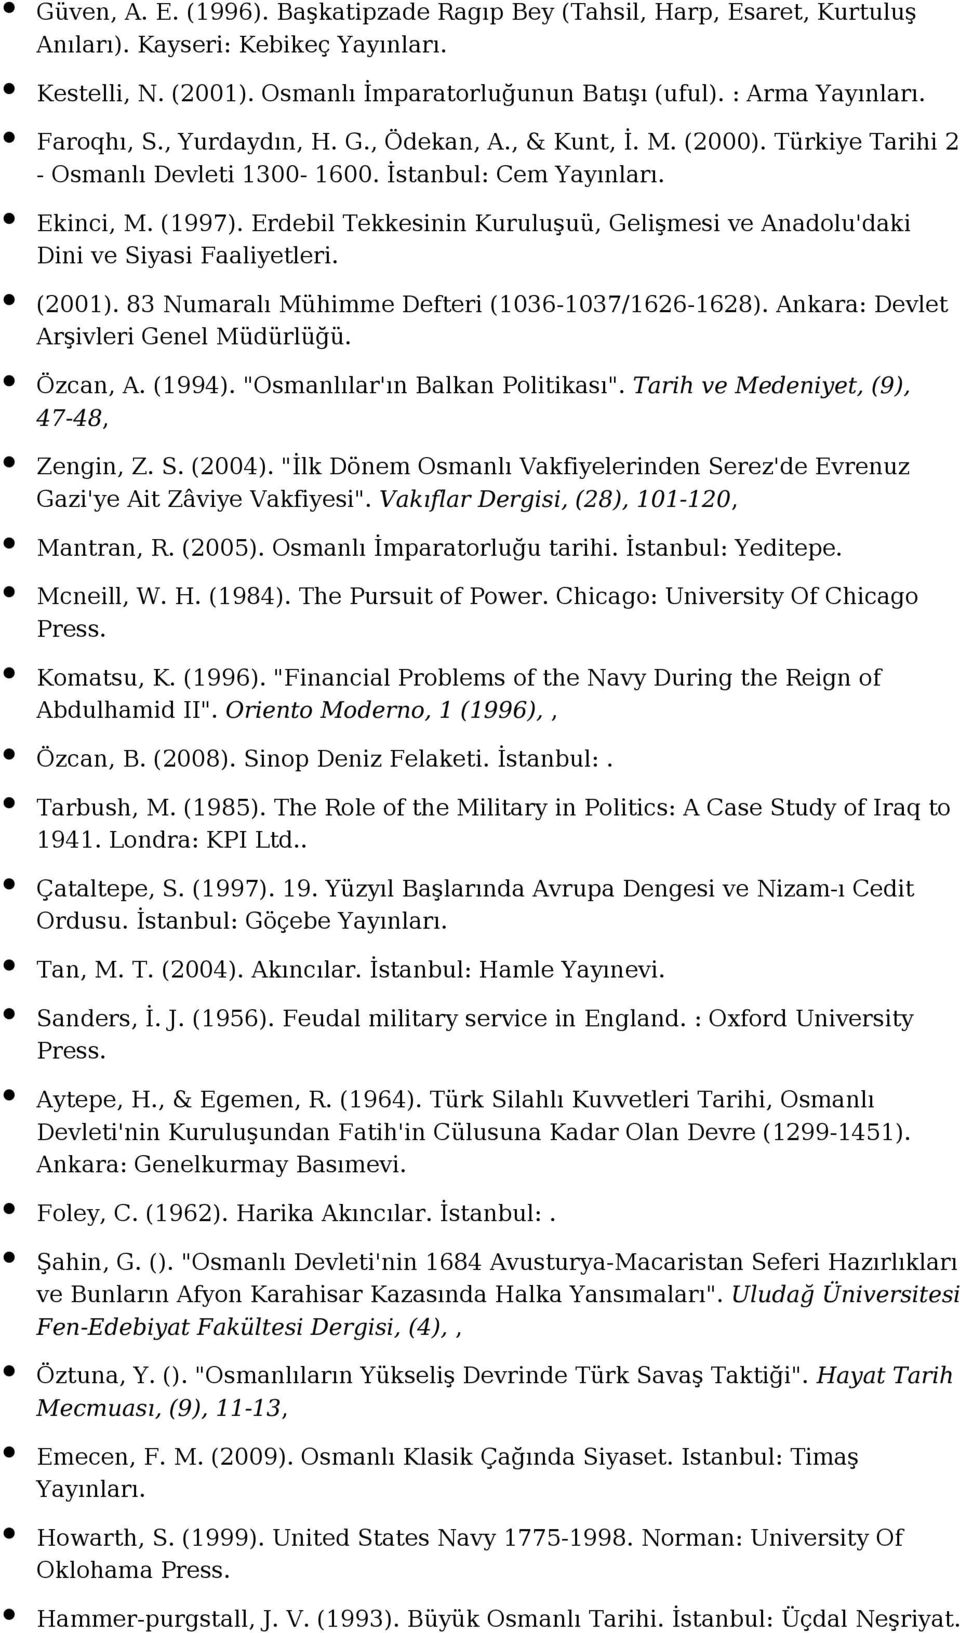 (2001). 83 Numaralı Mühimme Defteri (1036-1037/1626-1628). Ankara: Devlet Arşivleri Genel Müdürlüğü. Özcan, A. (1994). "Osmanlılar'ın Balkan Politikası". Tarih ve Medeniyet, (9), 47-48, Zengin, Z. S.